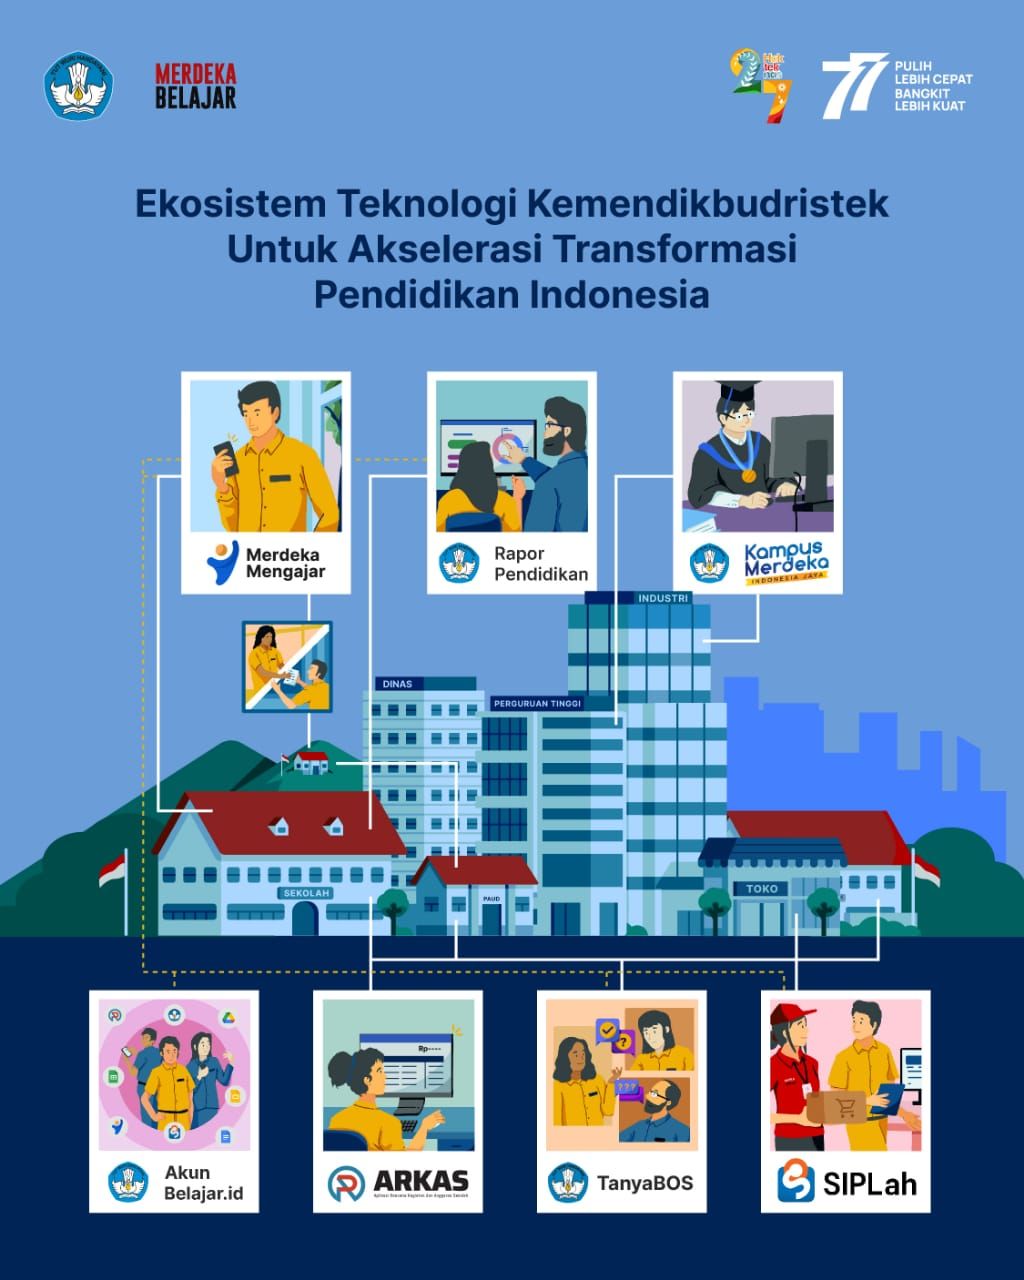 Ekosistem Teknologi Kemendikbudristek untuk akselerasi transfortasi pendidikan Indonesia*